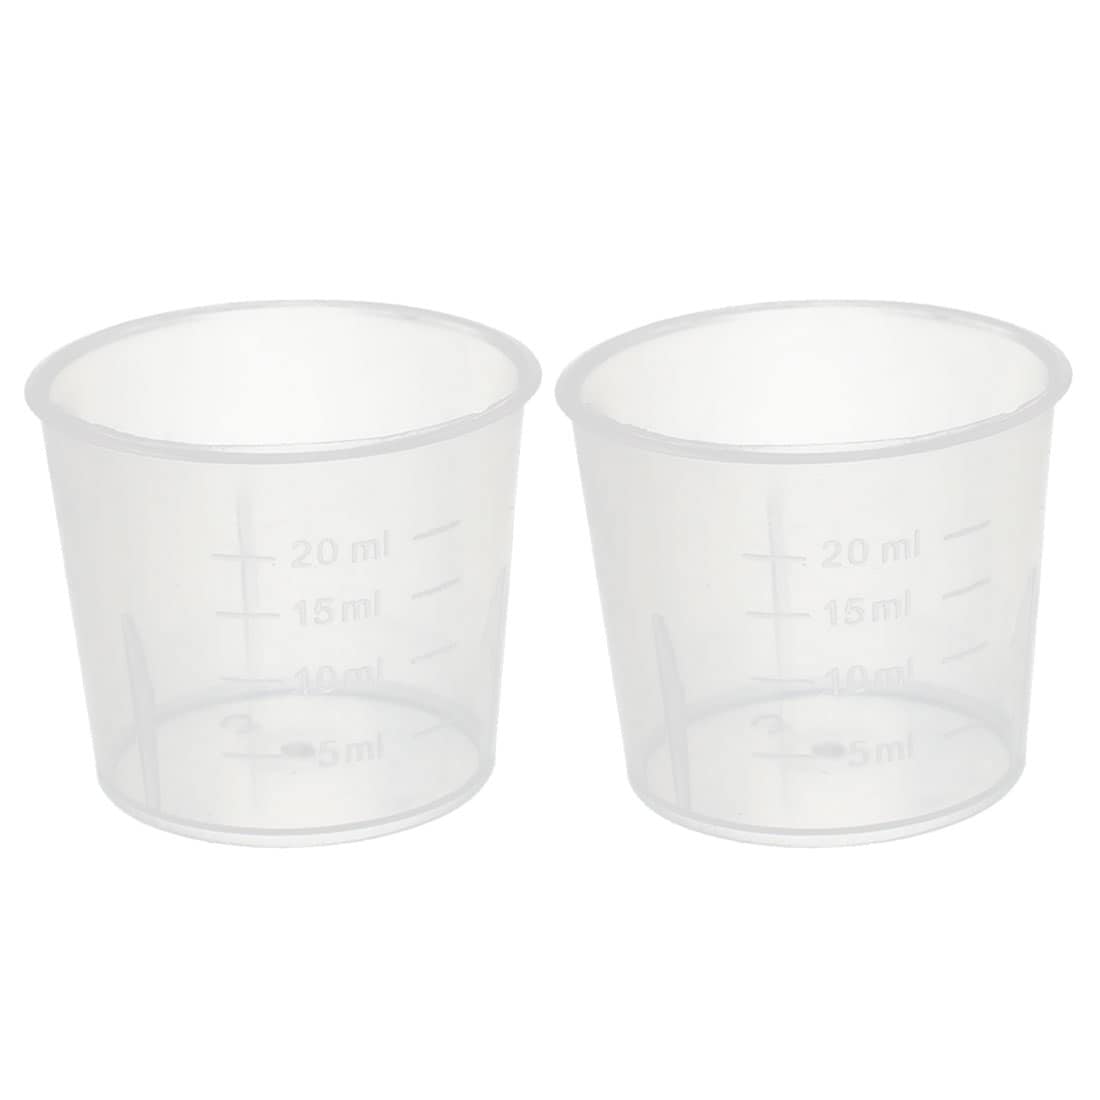 cup Pour Spout Liquid Jug Measuring Cup Transparent Mug Laboratory Beaker